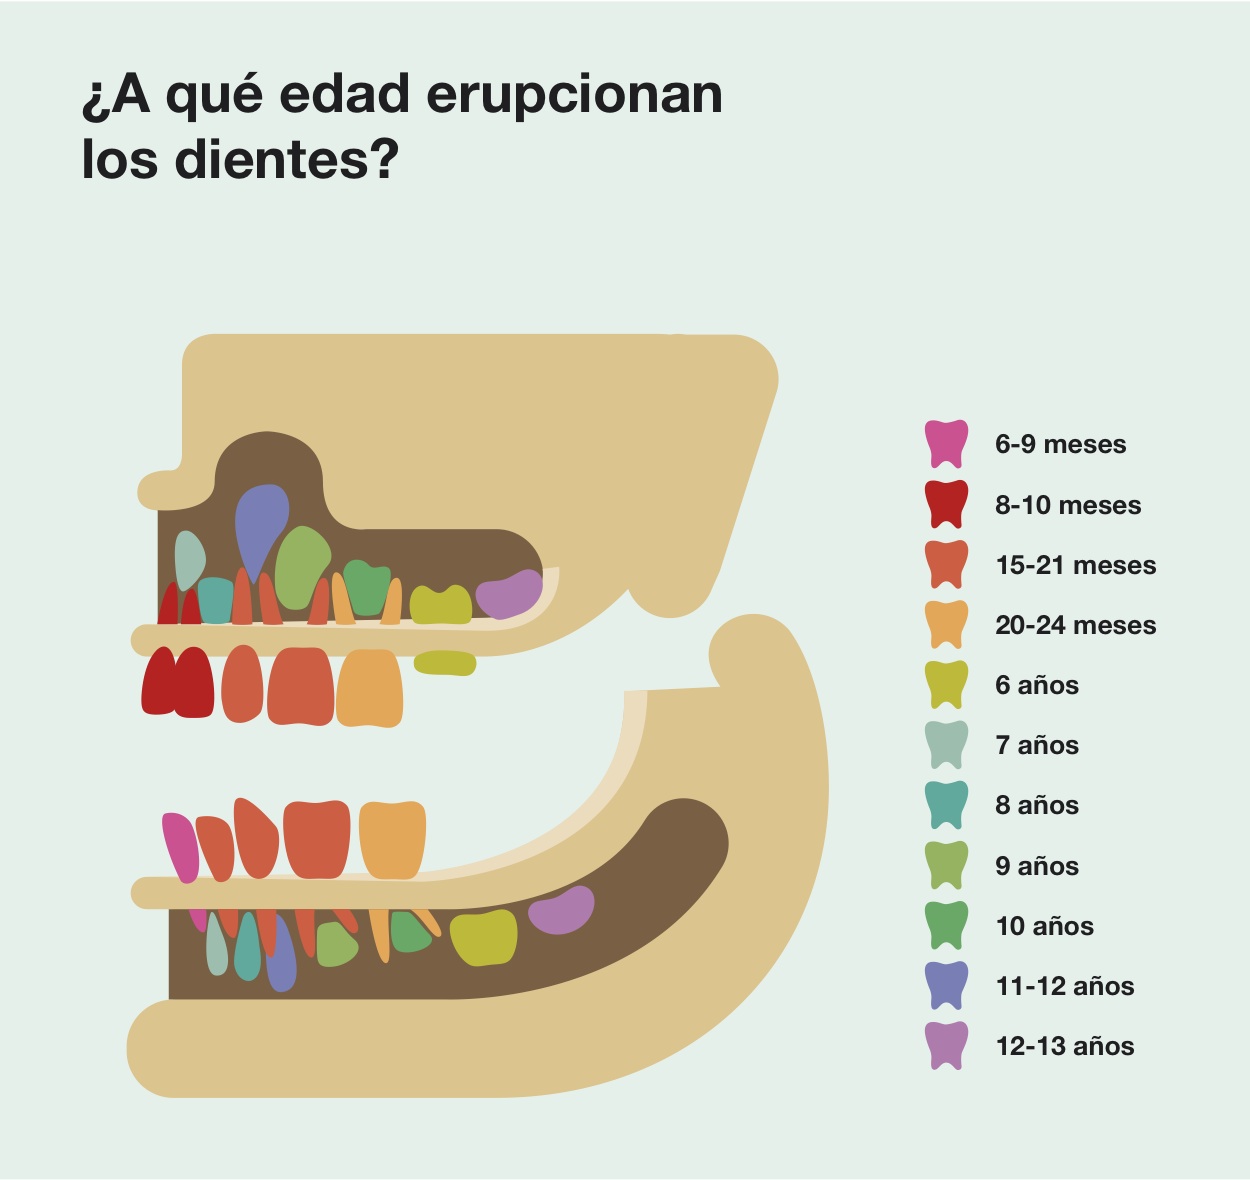 Cronología aproximada de secuencia eruptiva dental